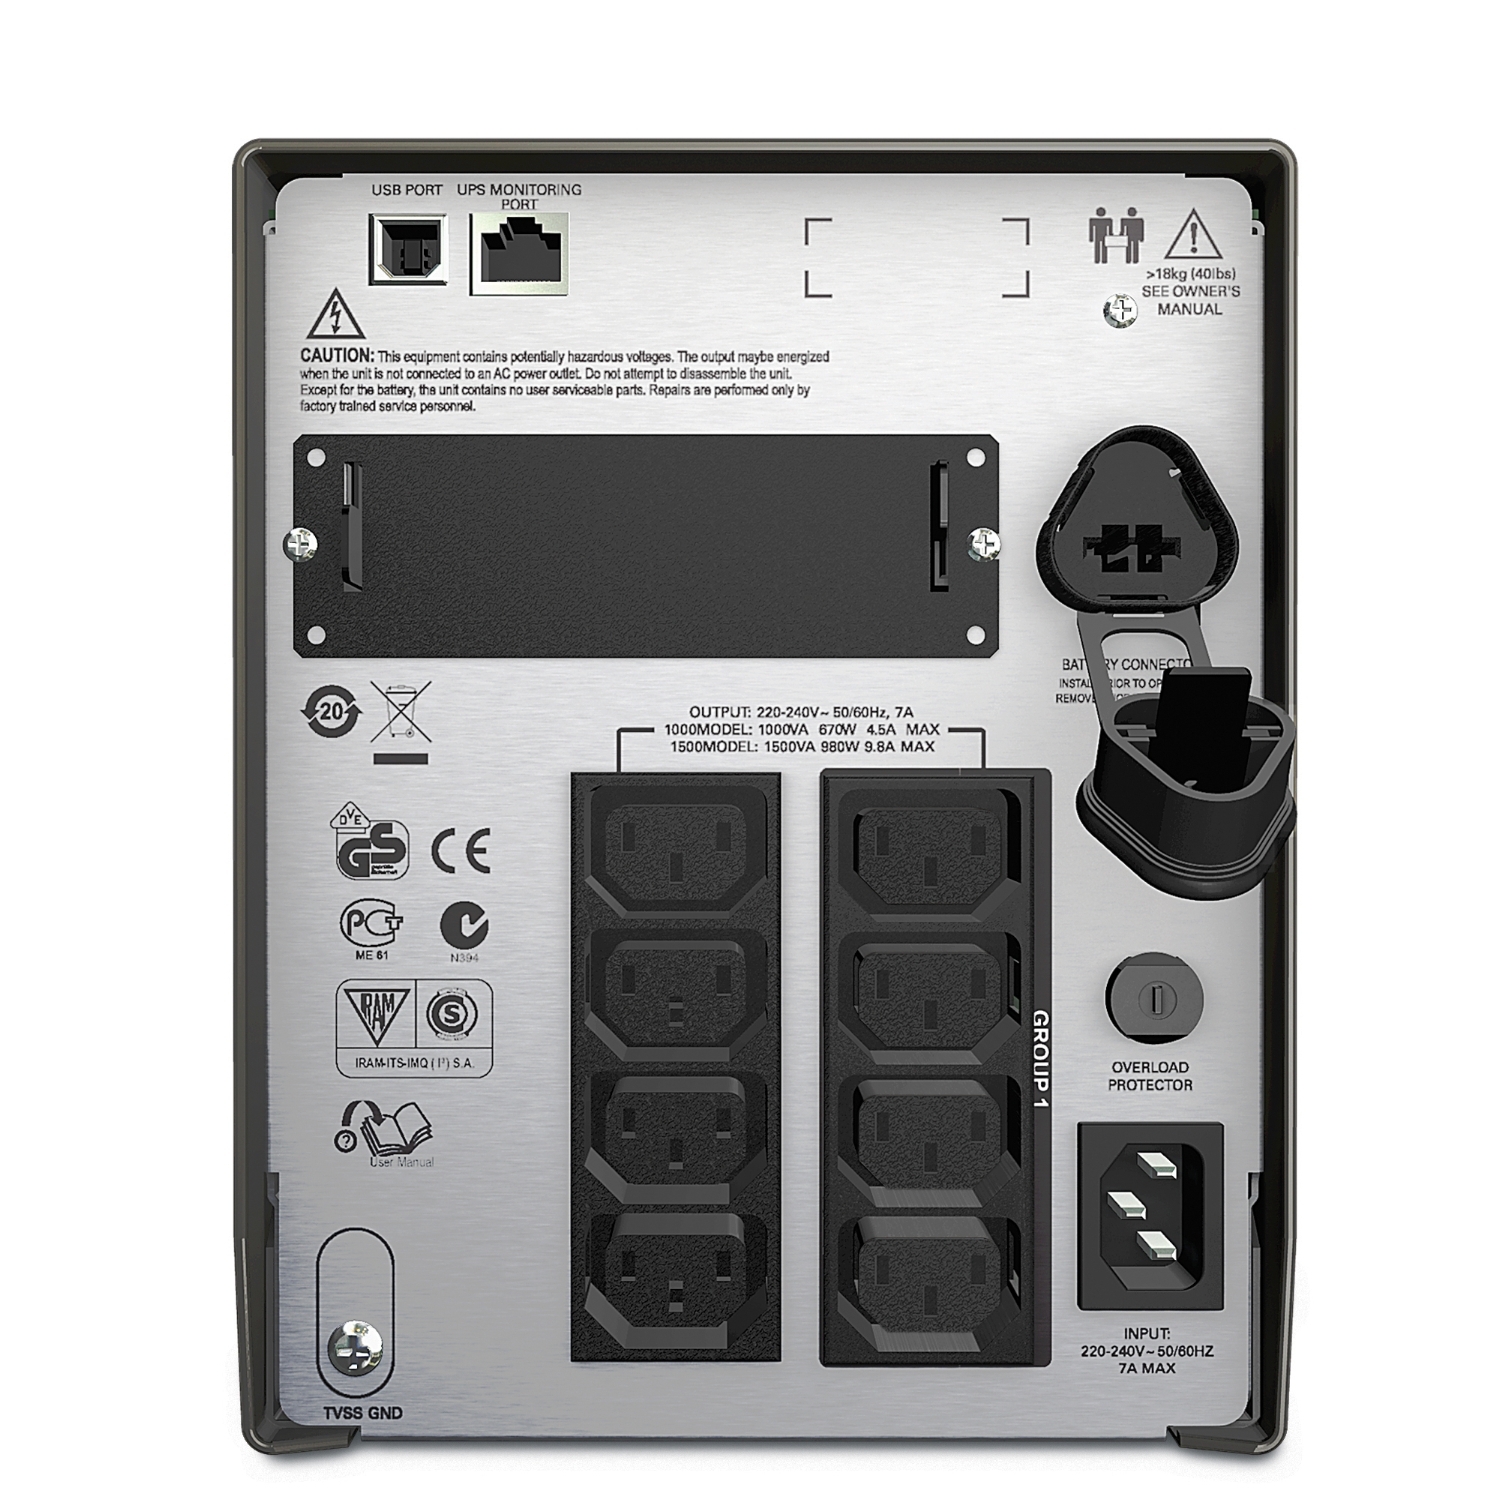 SMT1000I - Onduleur APC 1000VA Smart-UPS Line-interactive 